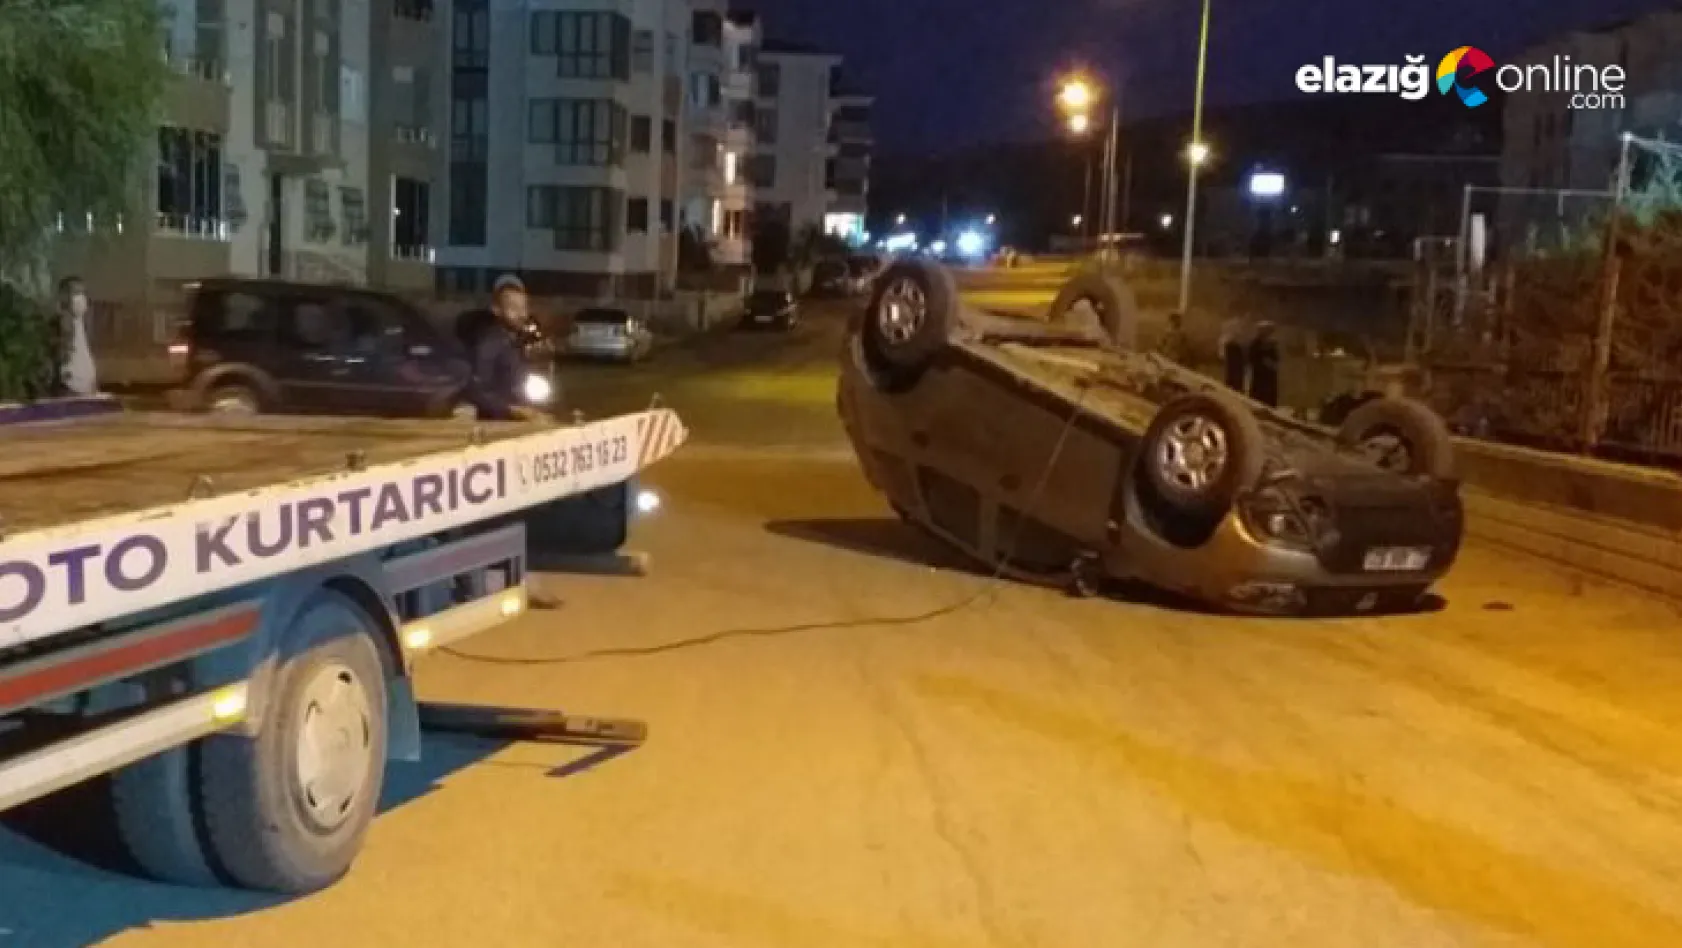 Elazığ-Malatya Yolunda Trafik Kazası: 2 Yaralı